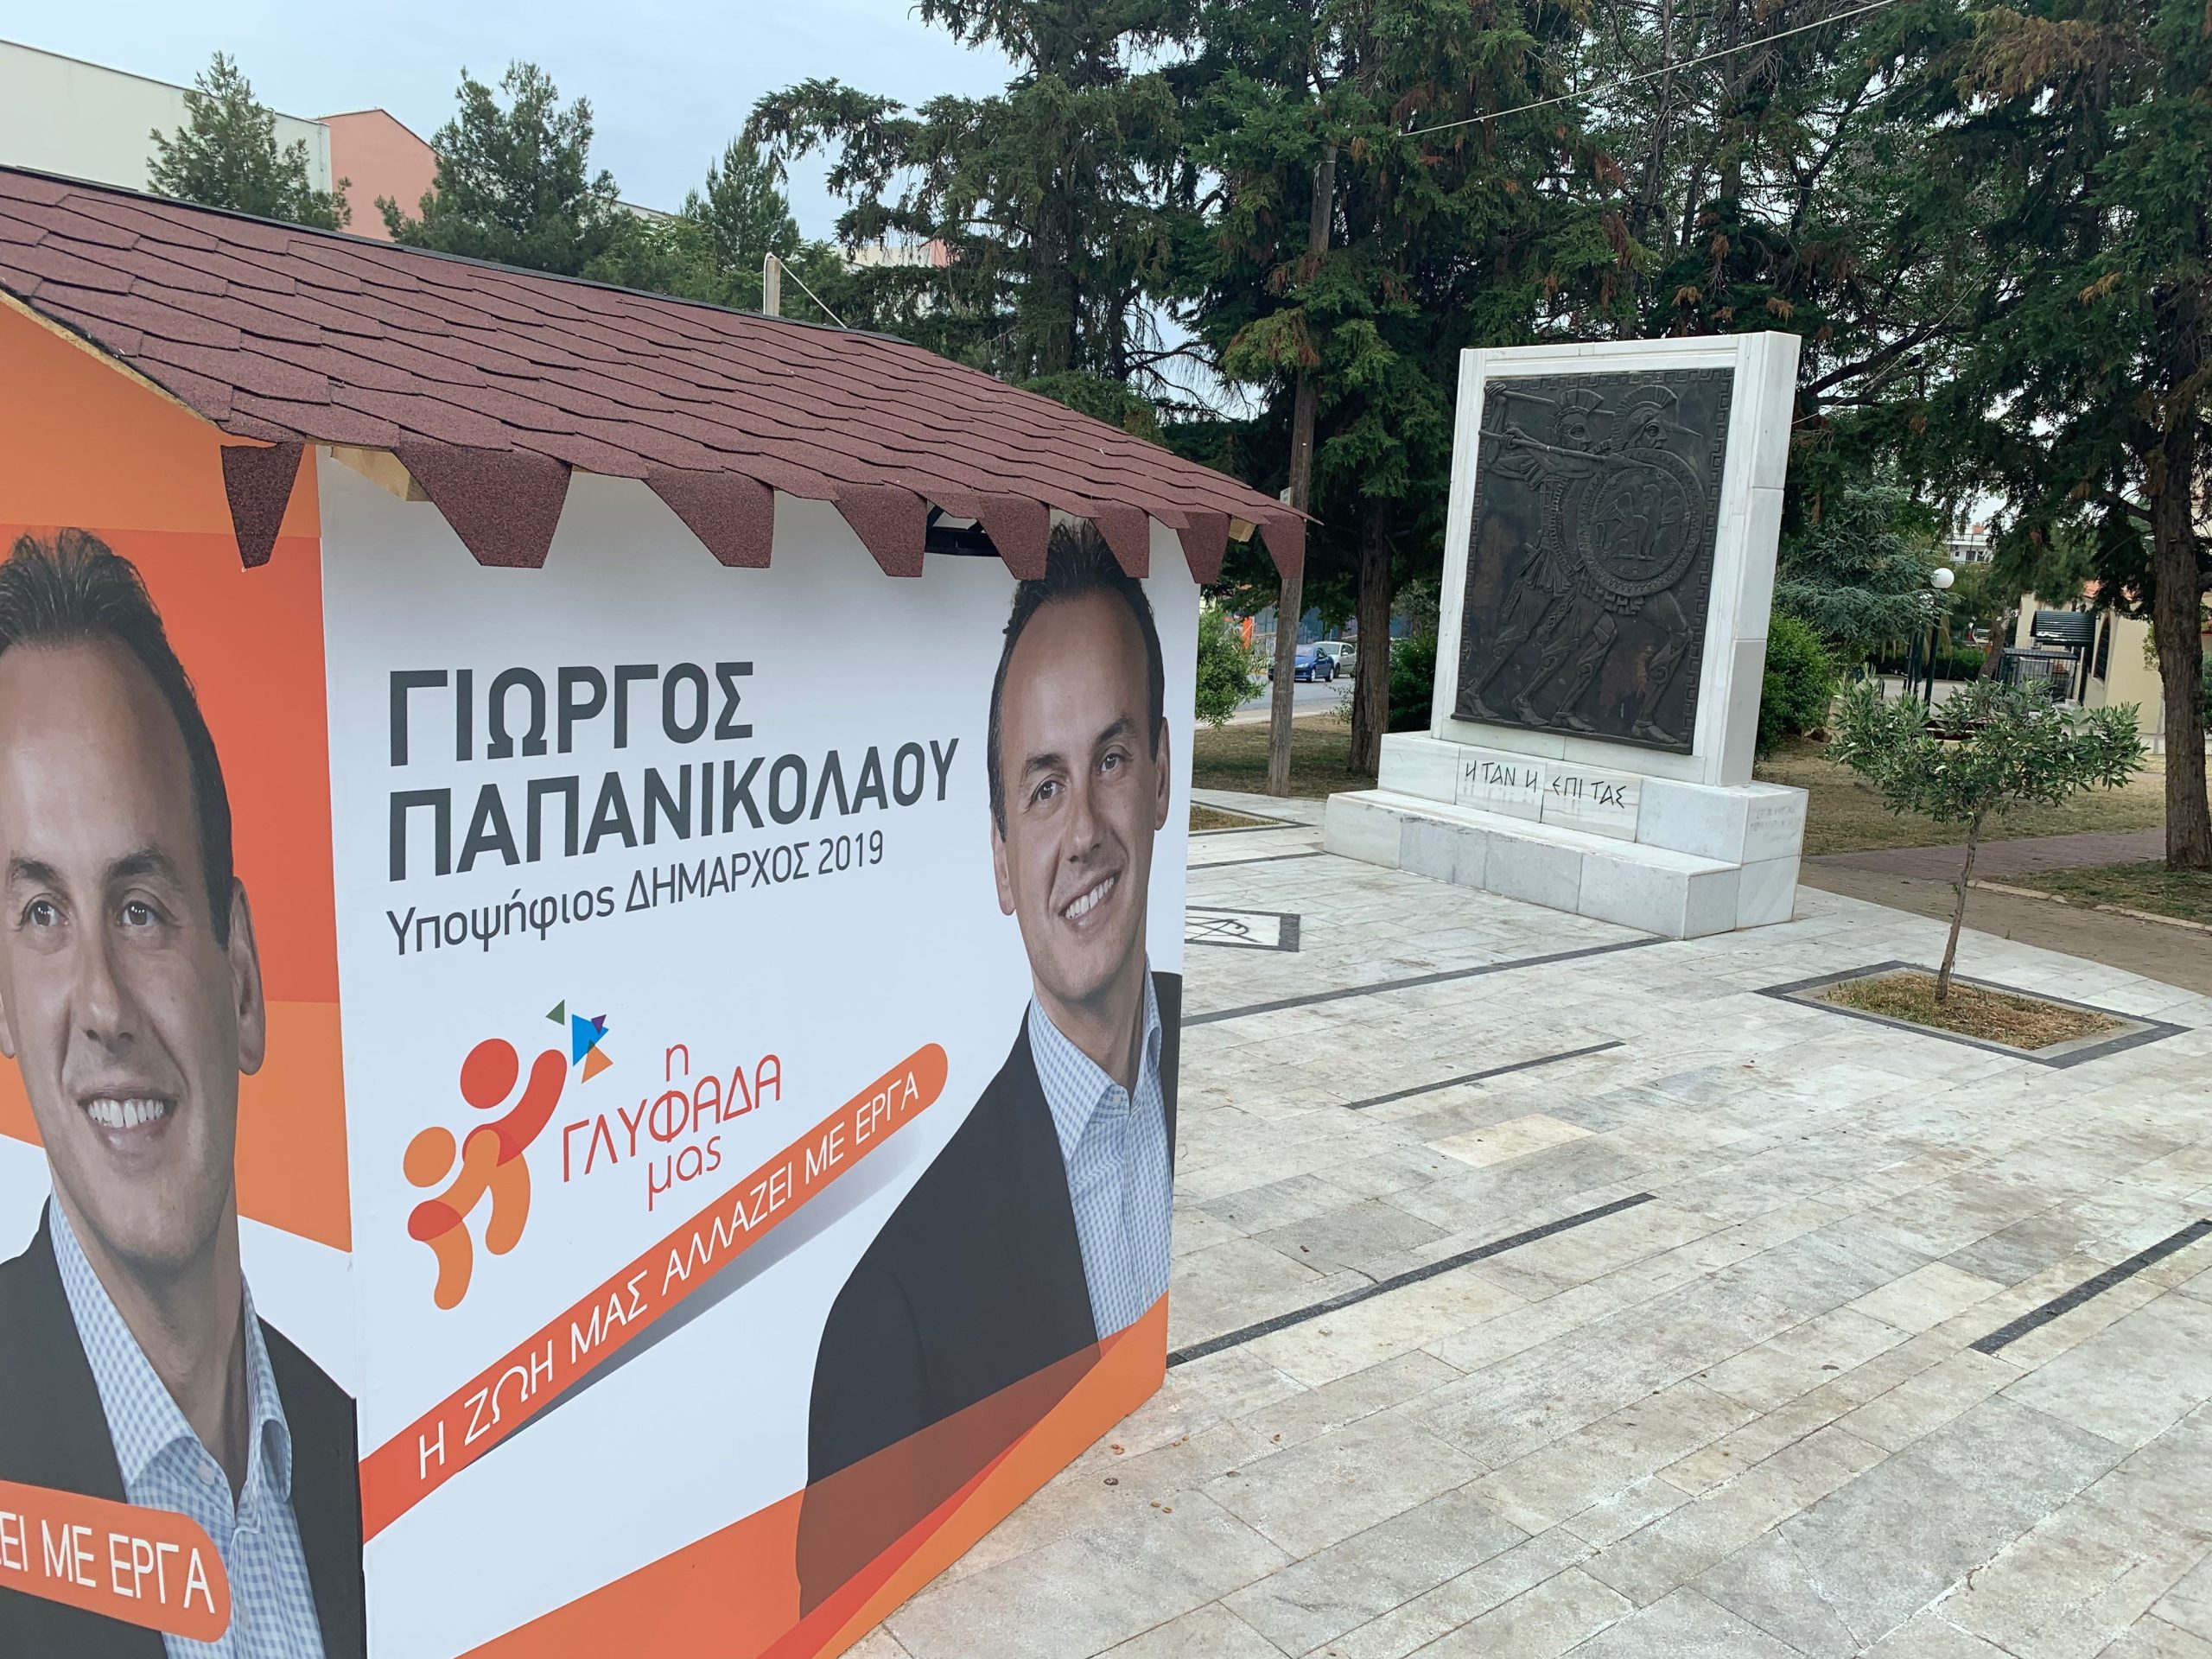 Ιεροσυλία του δημάρχου Γλυφάδας Γ.Παπανικολάου: Έβαλε εκλογικό κέντρο μέσα στο μνημείο των Πεσόντων του Δήμου Γλυφάδας!